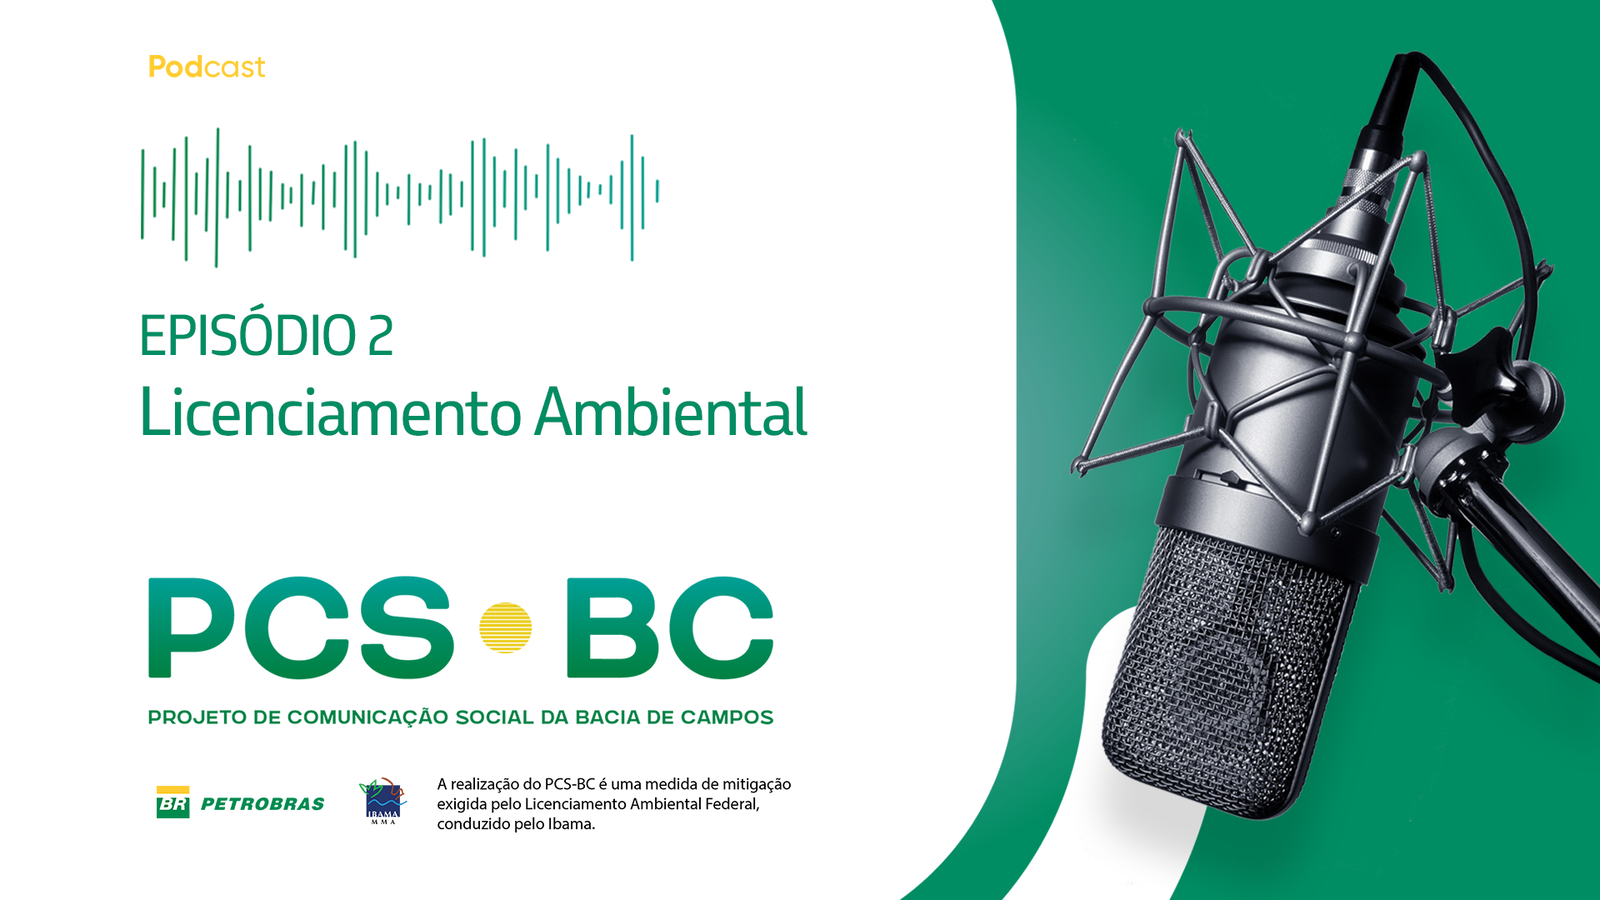 PCS-BC divulga videocast sobre licenciamento ambiental